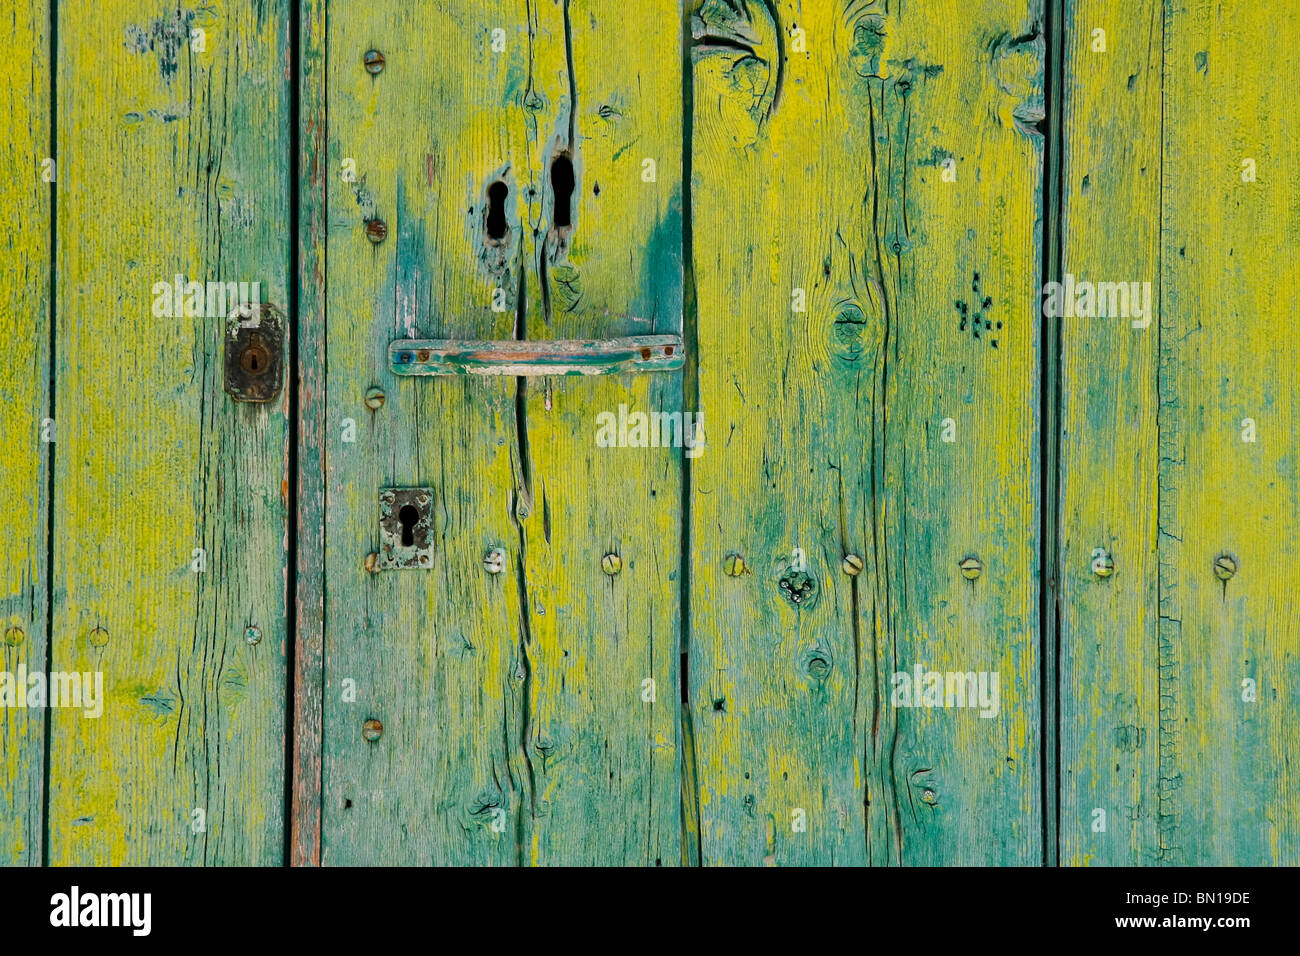 Detalle de una rústica puerta de madera verde y amarillo Foto de stock